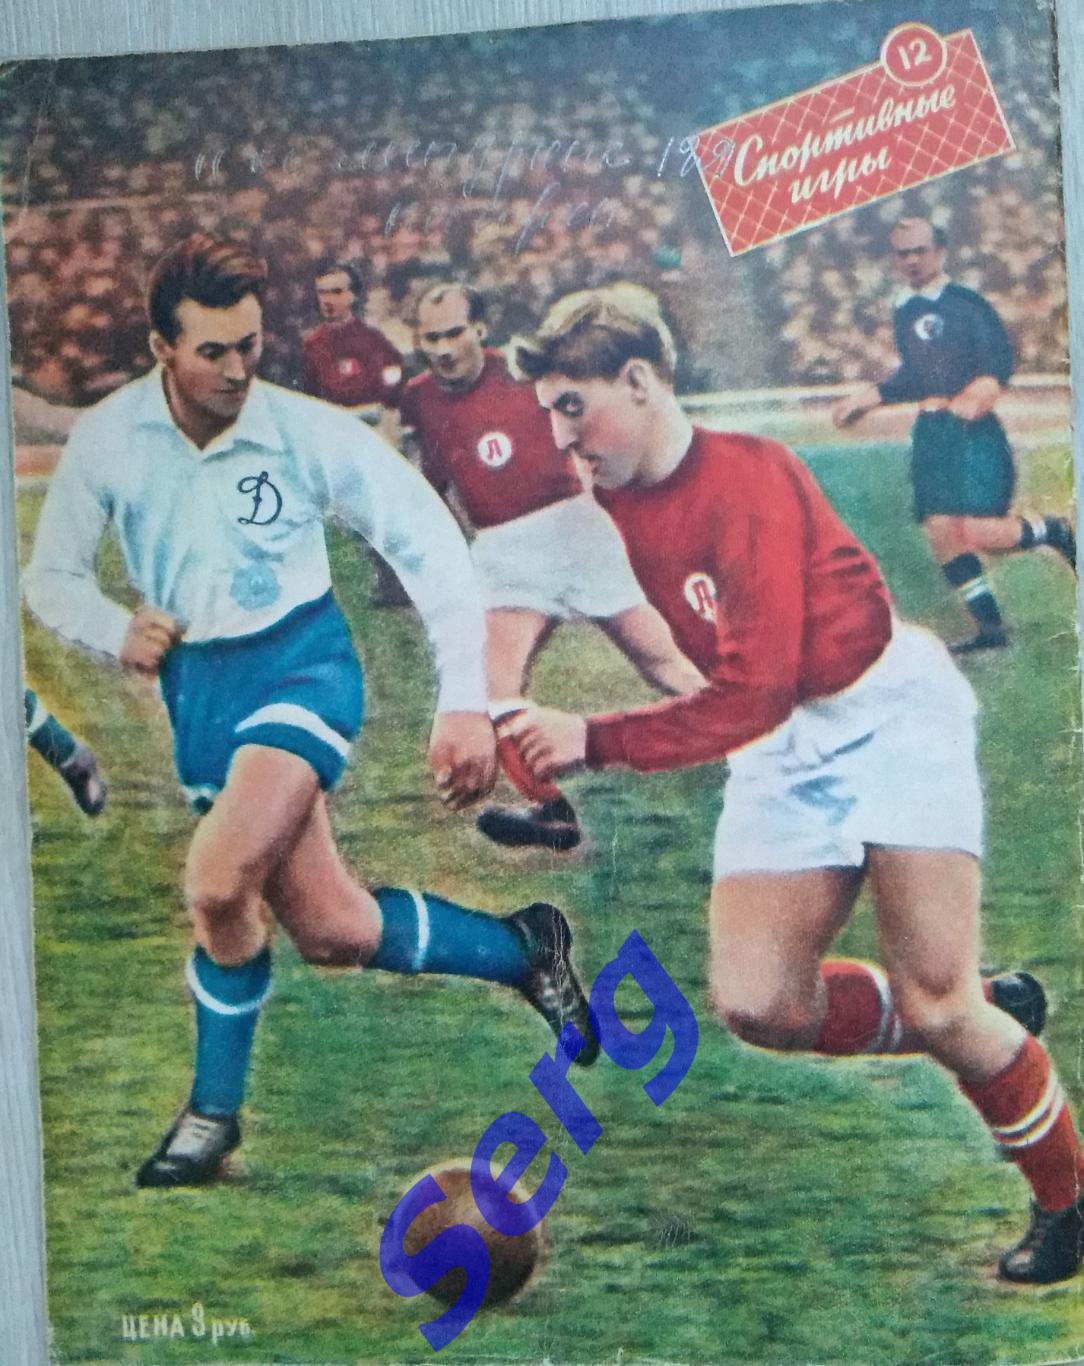 Журнал Спортивные игры №12 1959 год 5